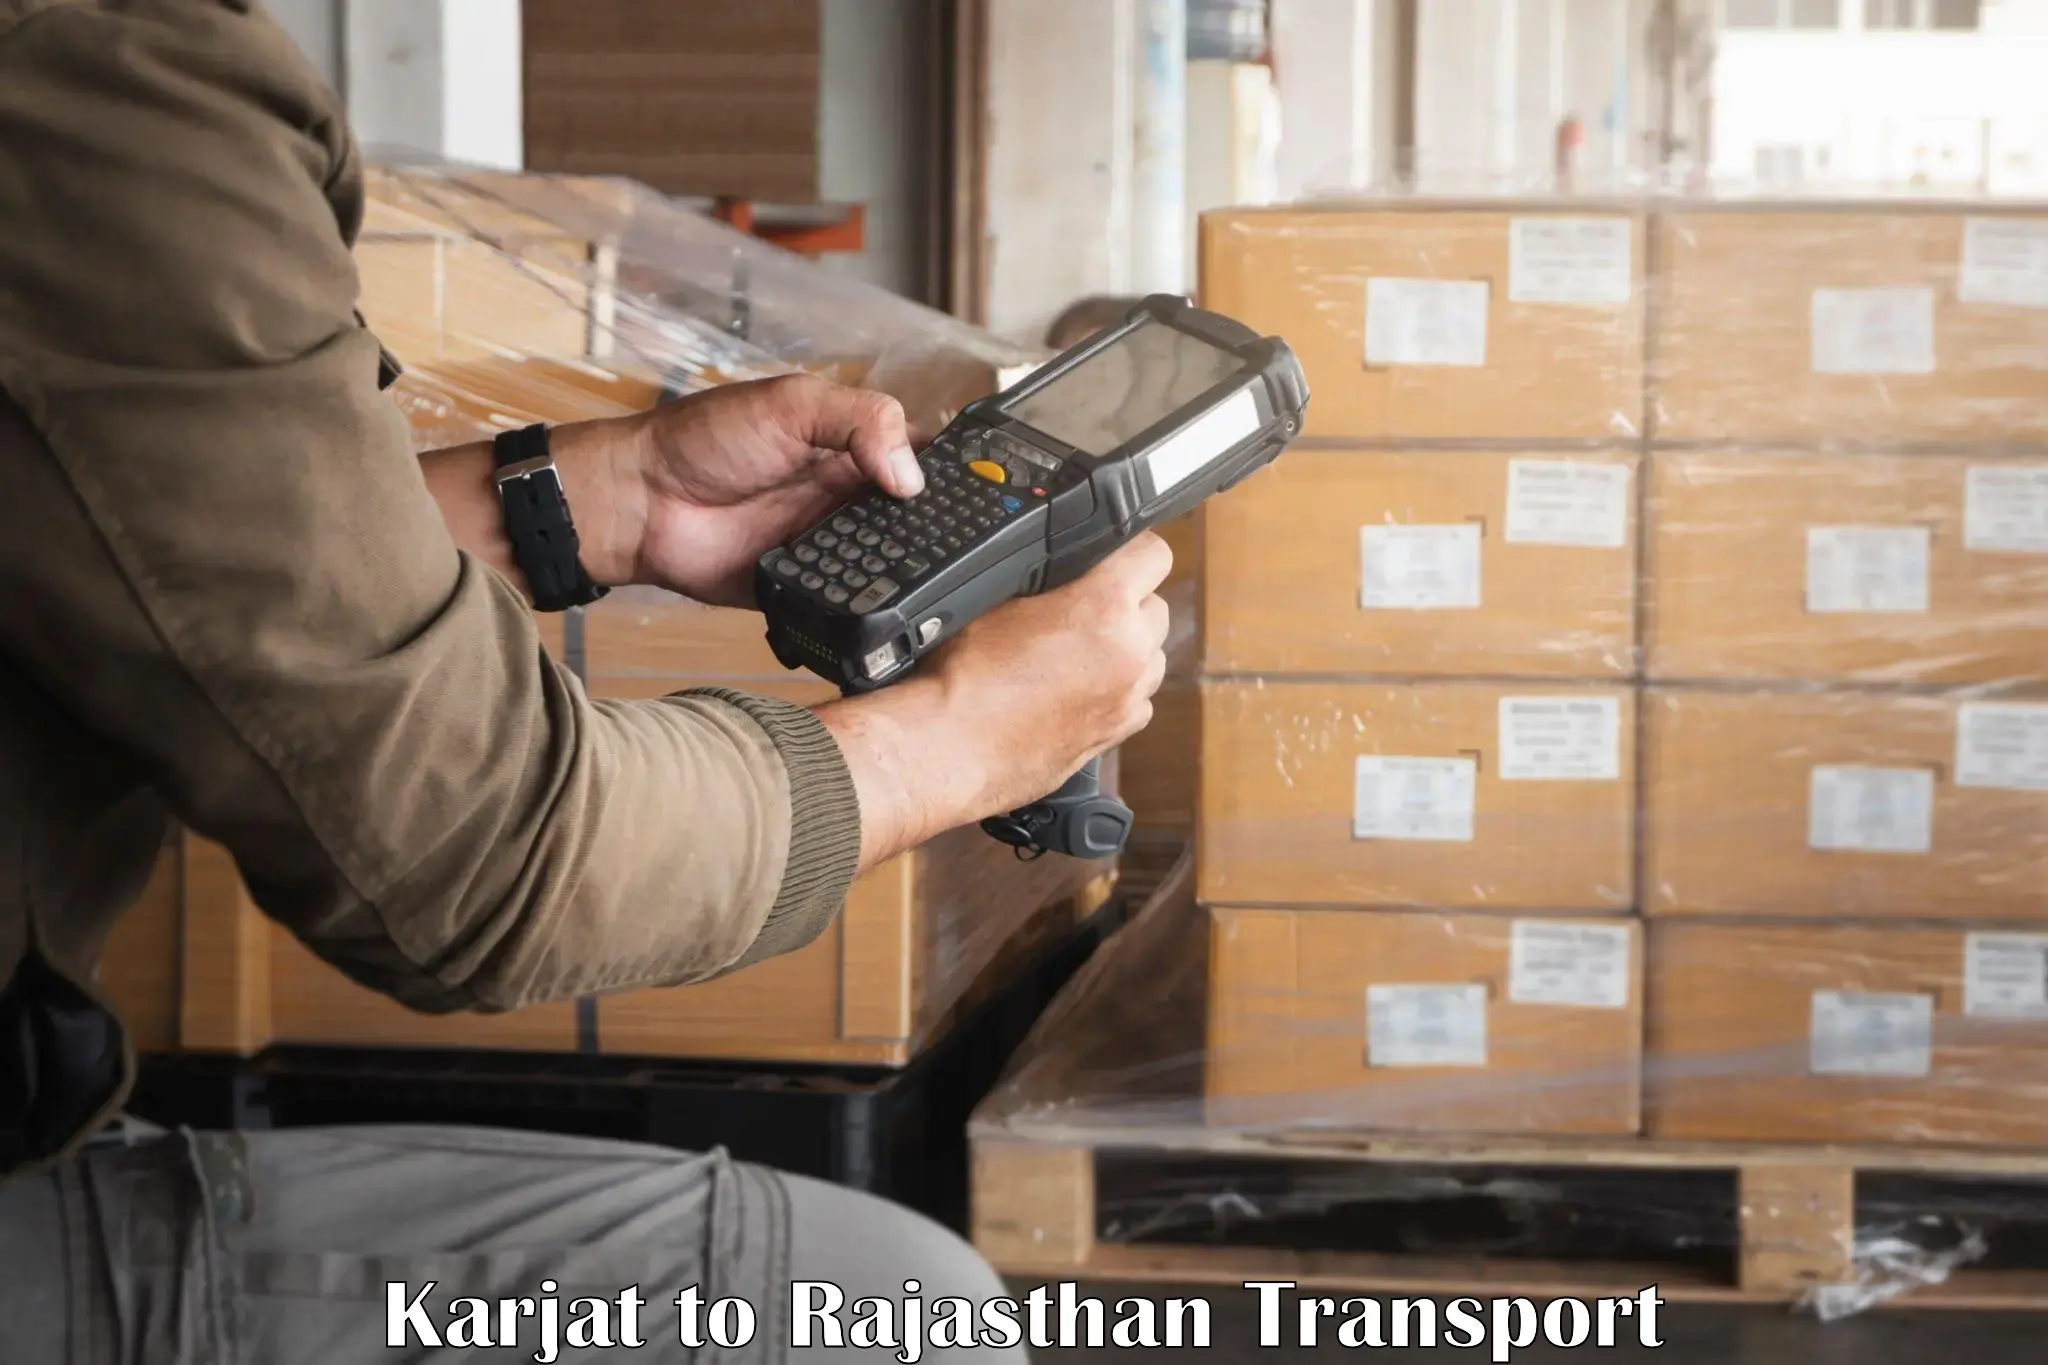 Express transport services Karjat to Nagaur